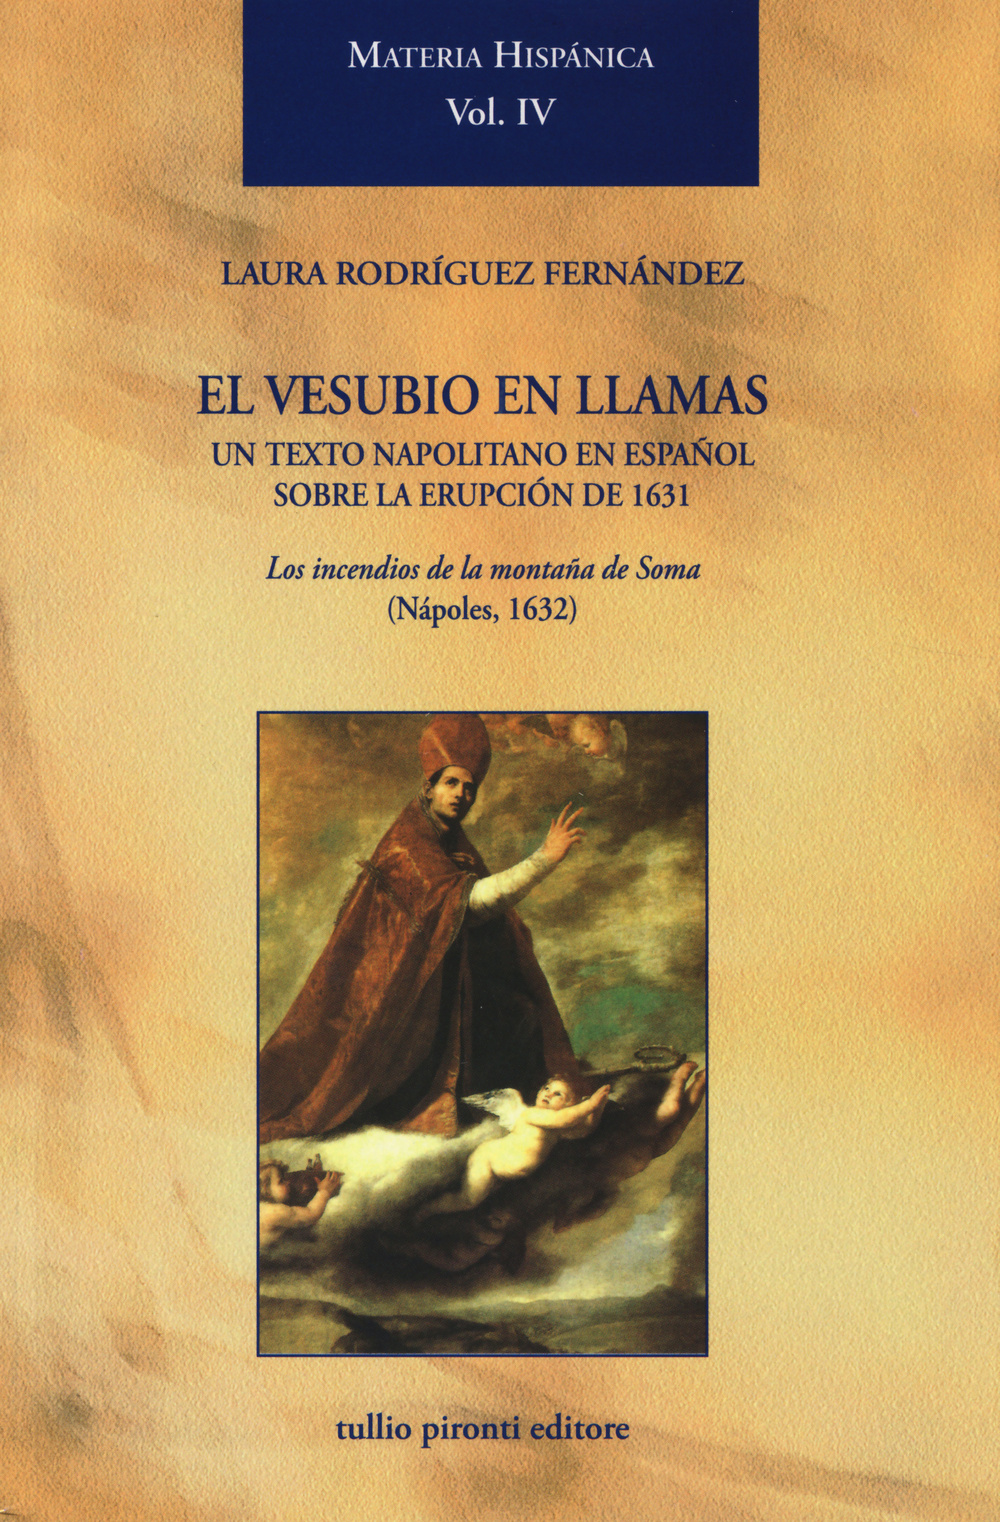 El Vesubio en llamas: un texto napolitano en español sobre la erupción de 1631. Los incendios de la montaña de Soma (Nápoles, 1632)